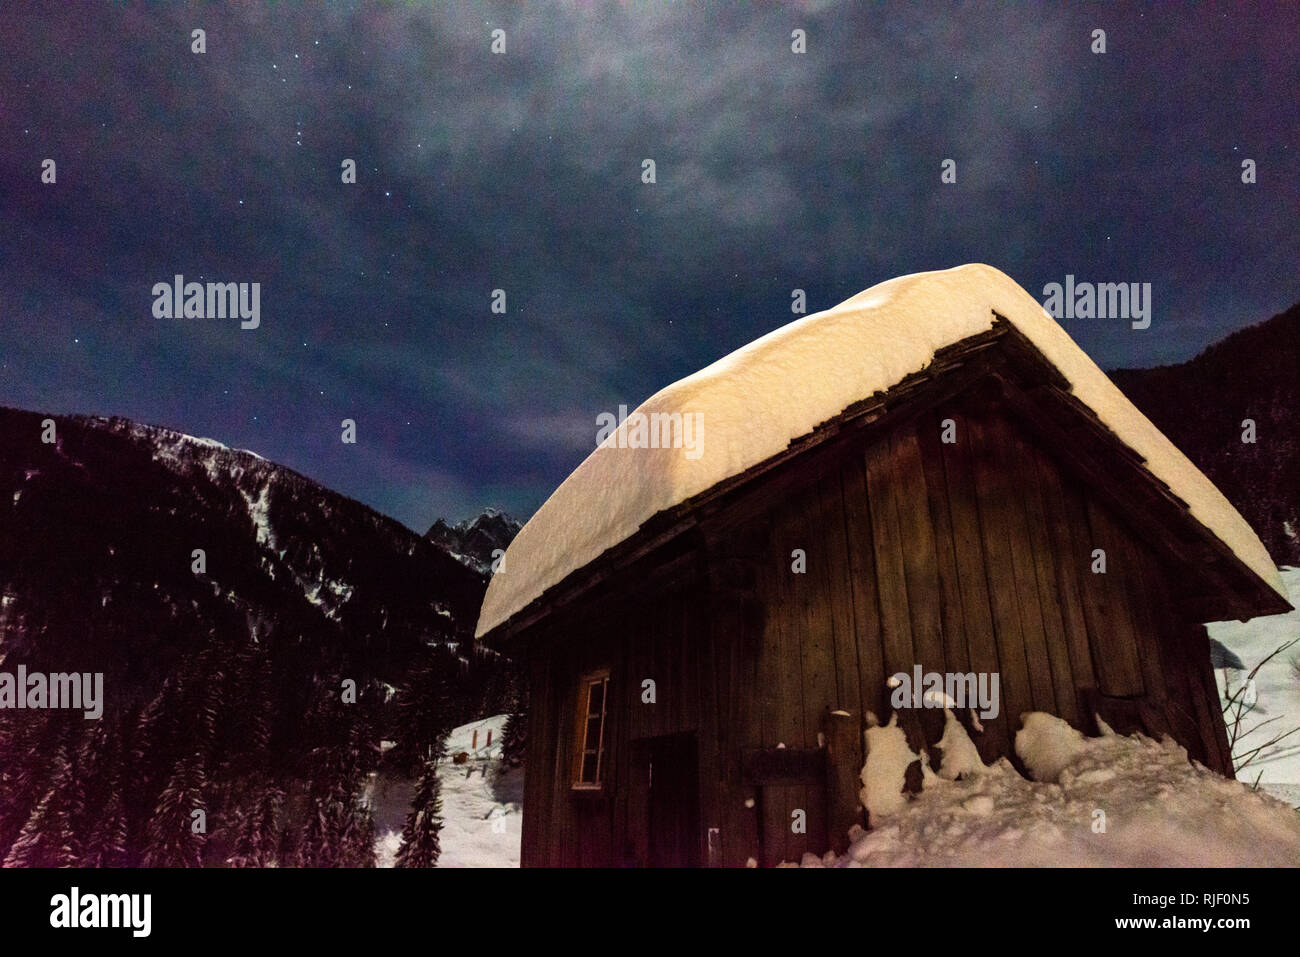 Cabina nelle Alpi coperte di neve durante la notte Foto Stock